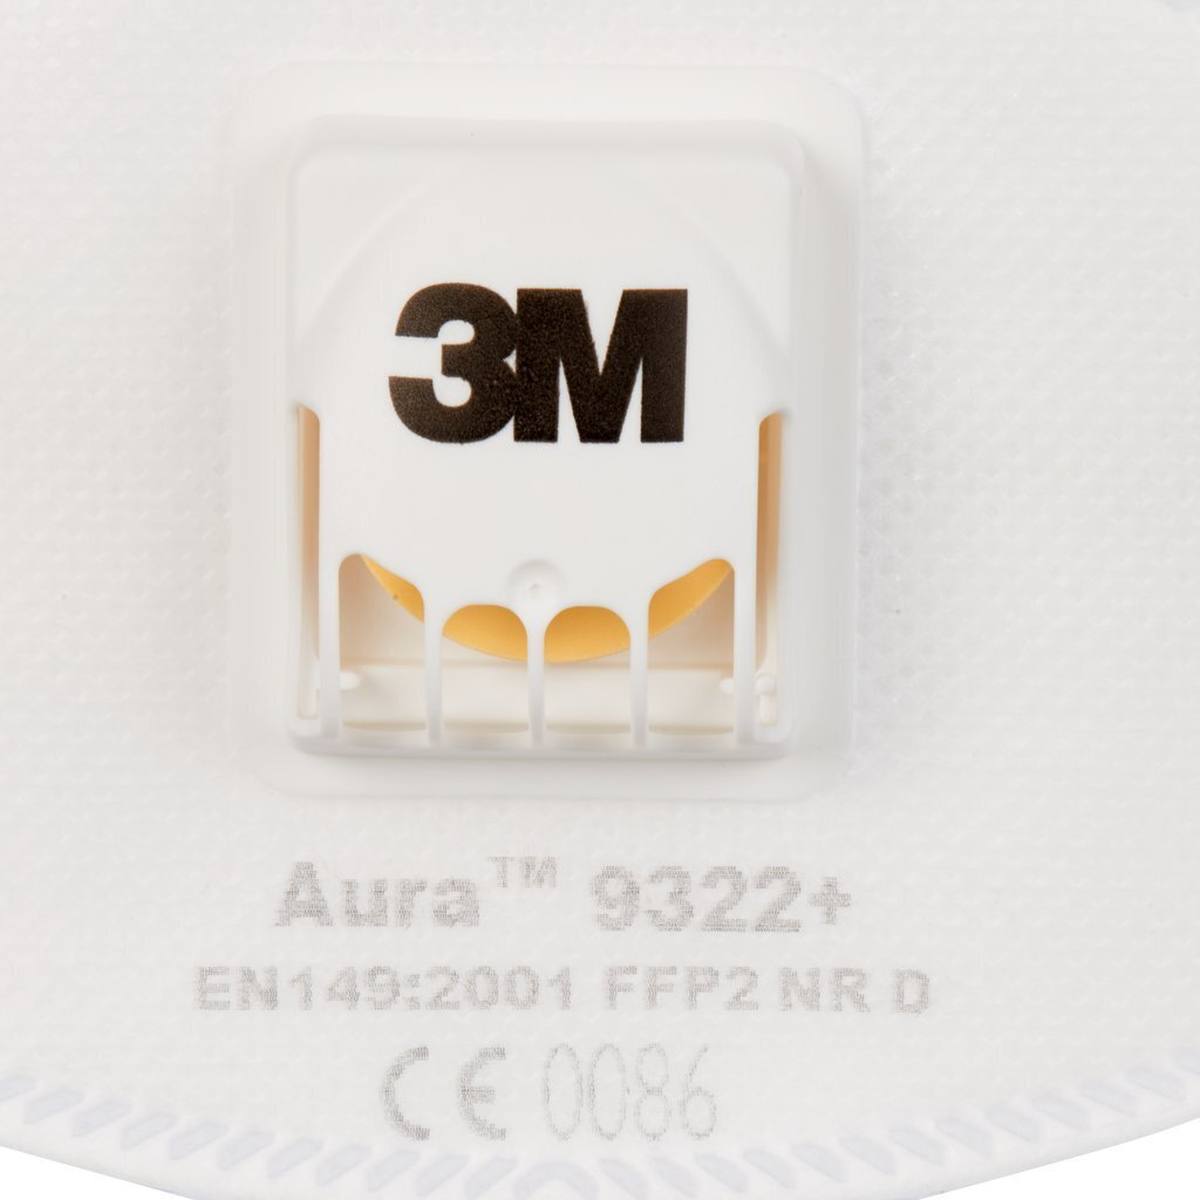 3M 9322+ Aura Masque de protection respiratoire FFP2 avec valve d'expiration Cool-Flow, jusqu'à 10 fois la valeur limite (emballage individuel hygiénique)